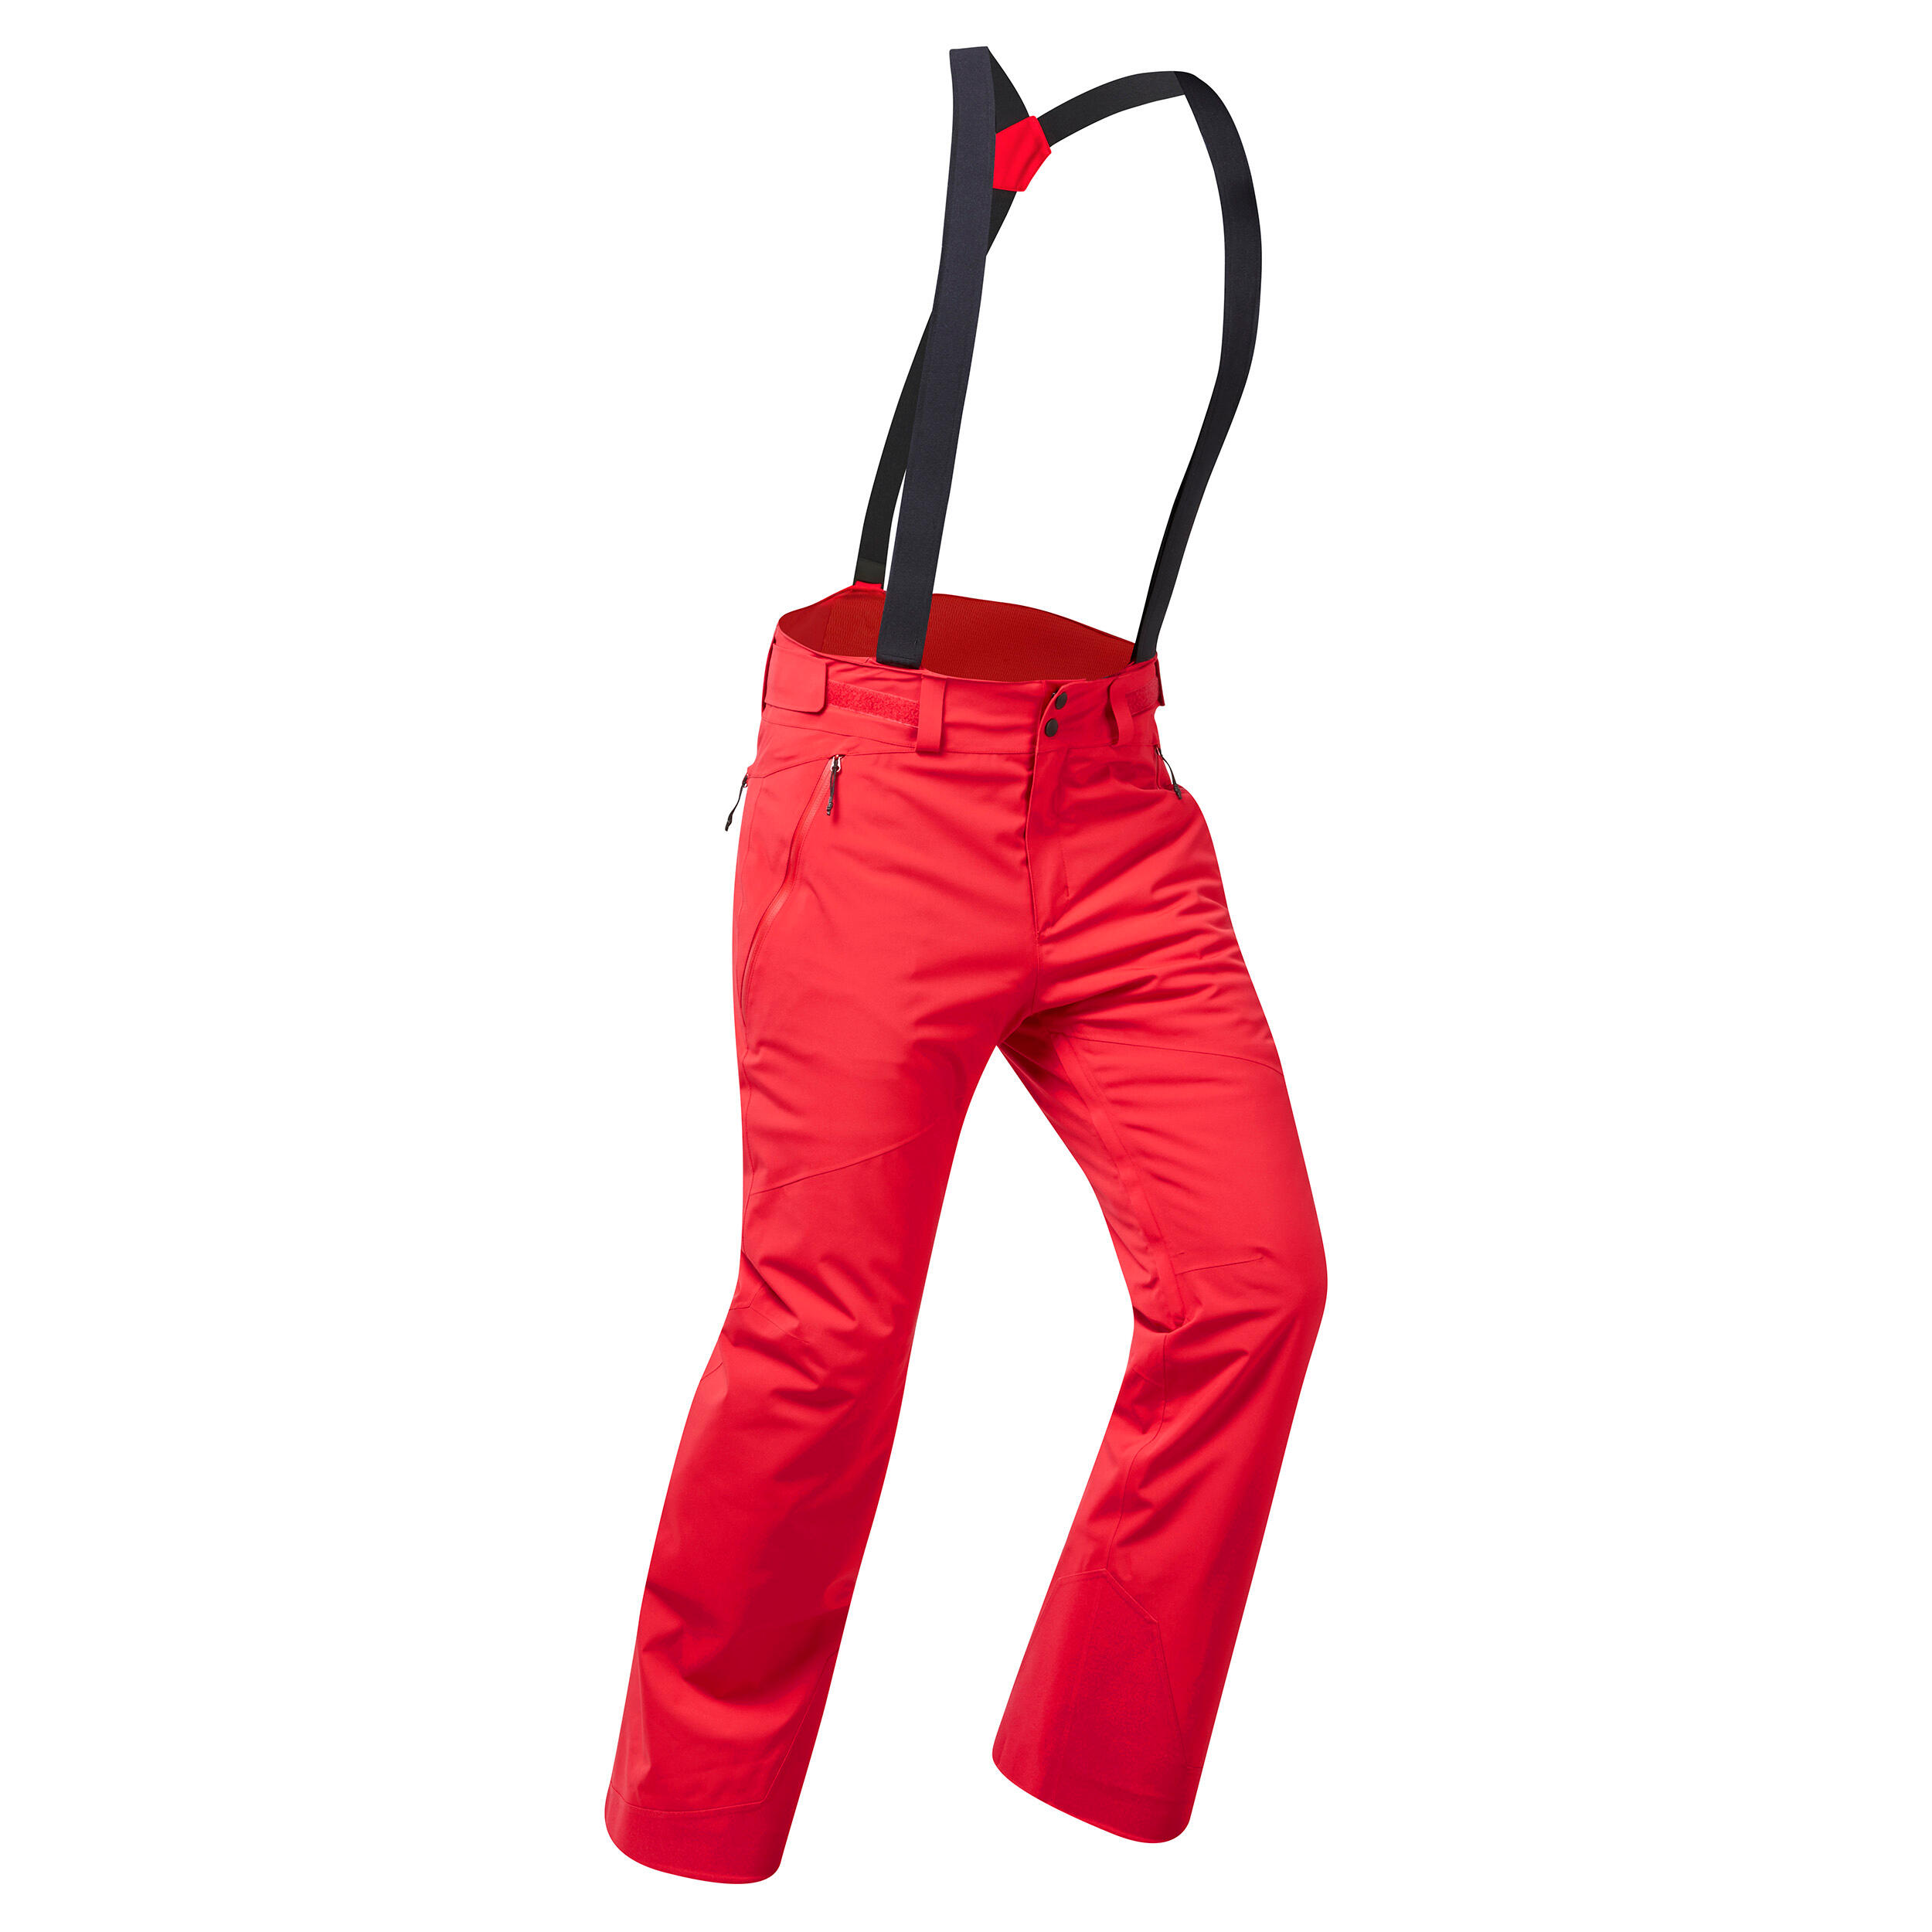 Pantalon schi 580 Roșu Bărbați La Oferta Online decathlon imagine La Oferta Online